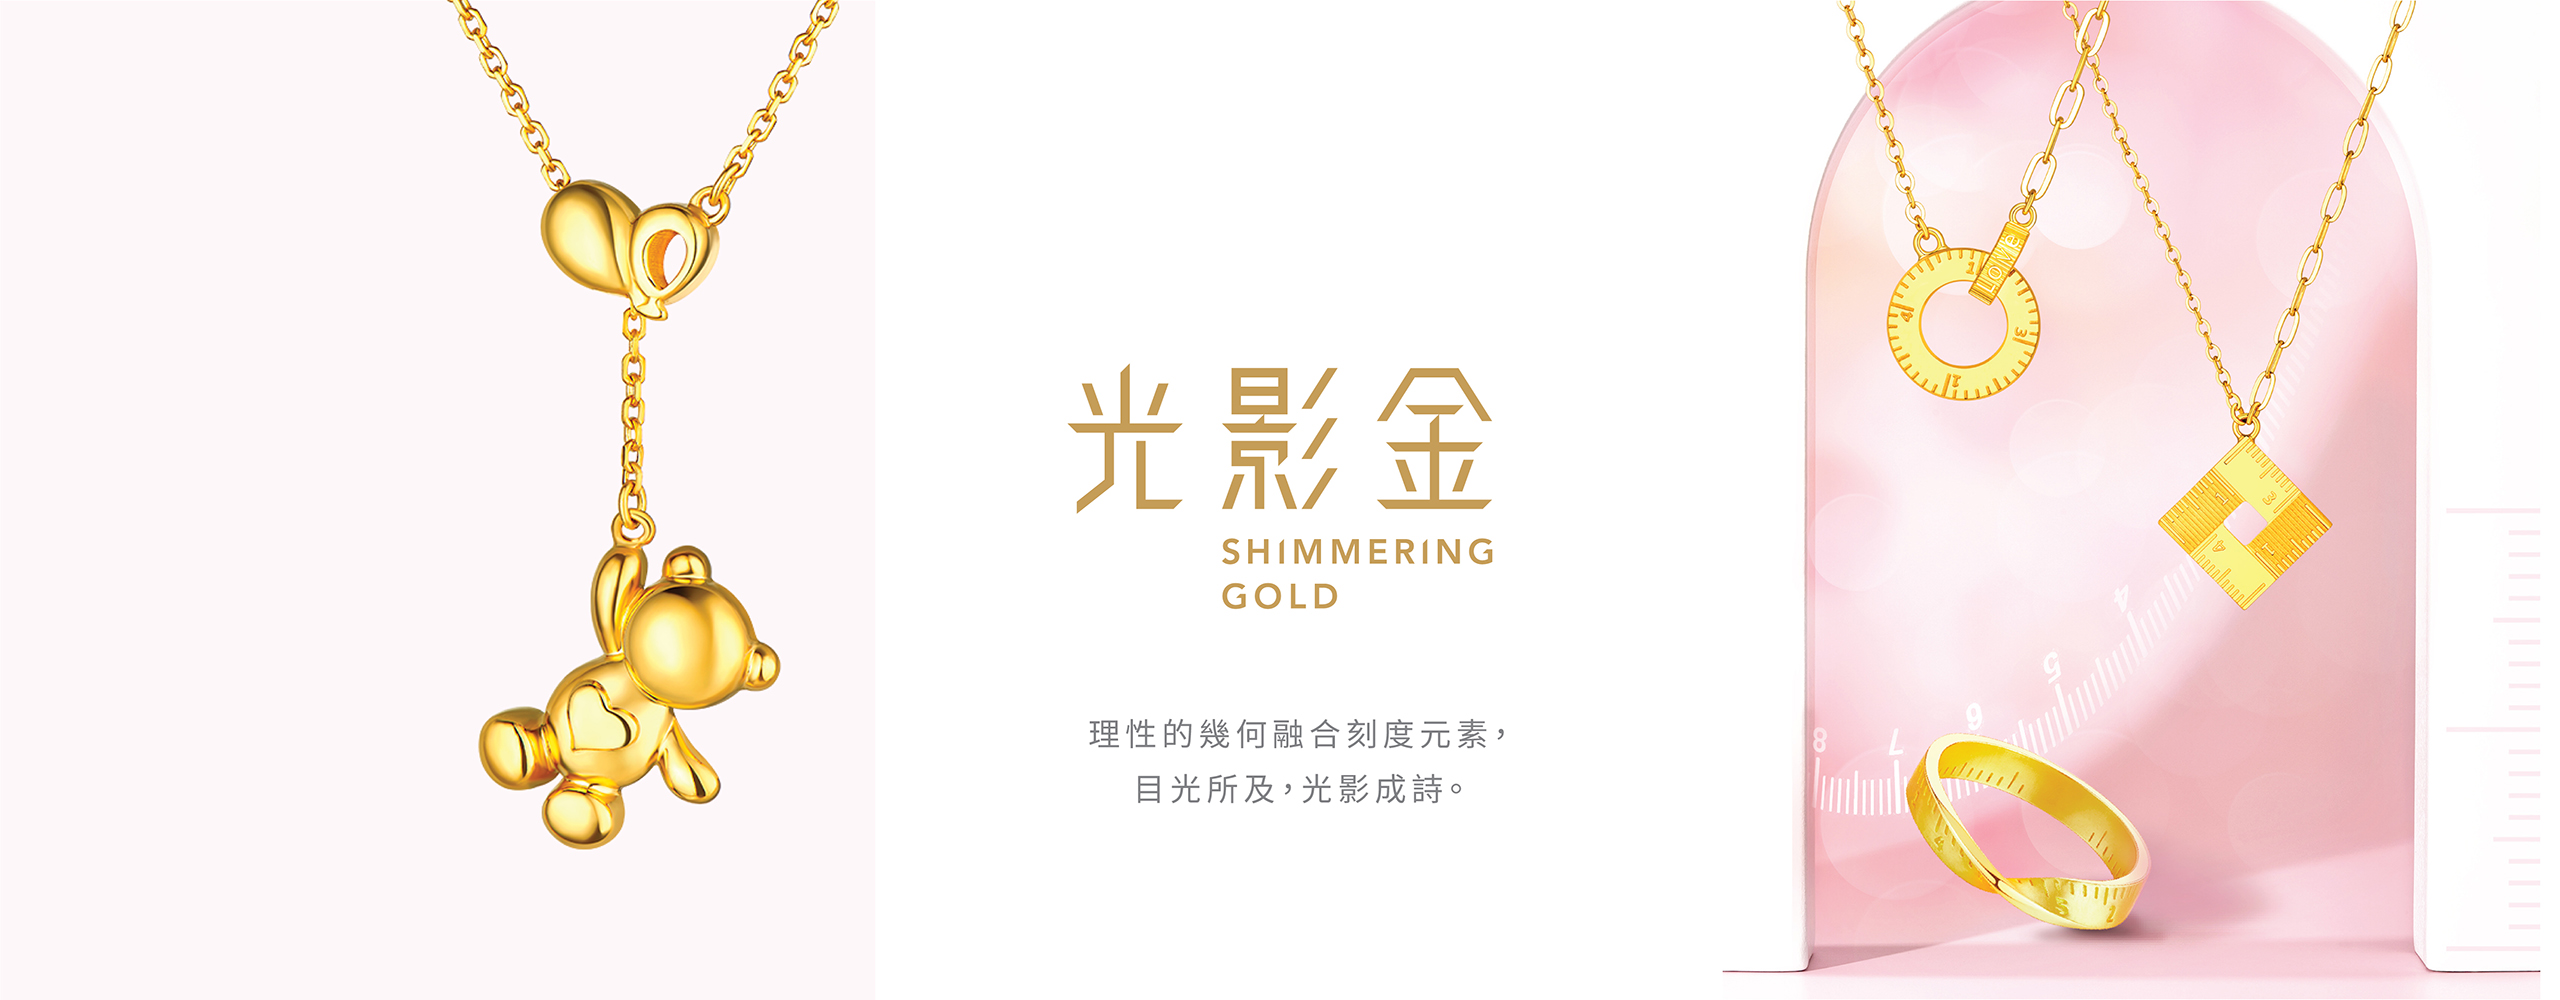 六福珠寶 - Shimmering Gold | 光影金系列  Banner